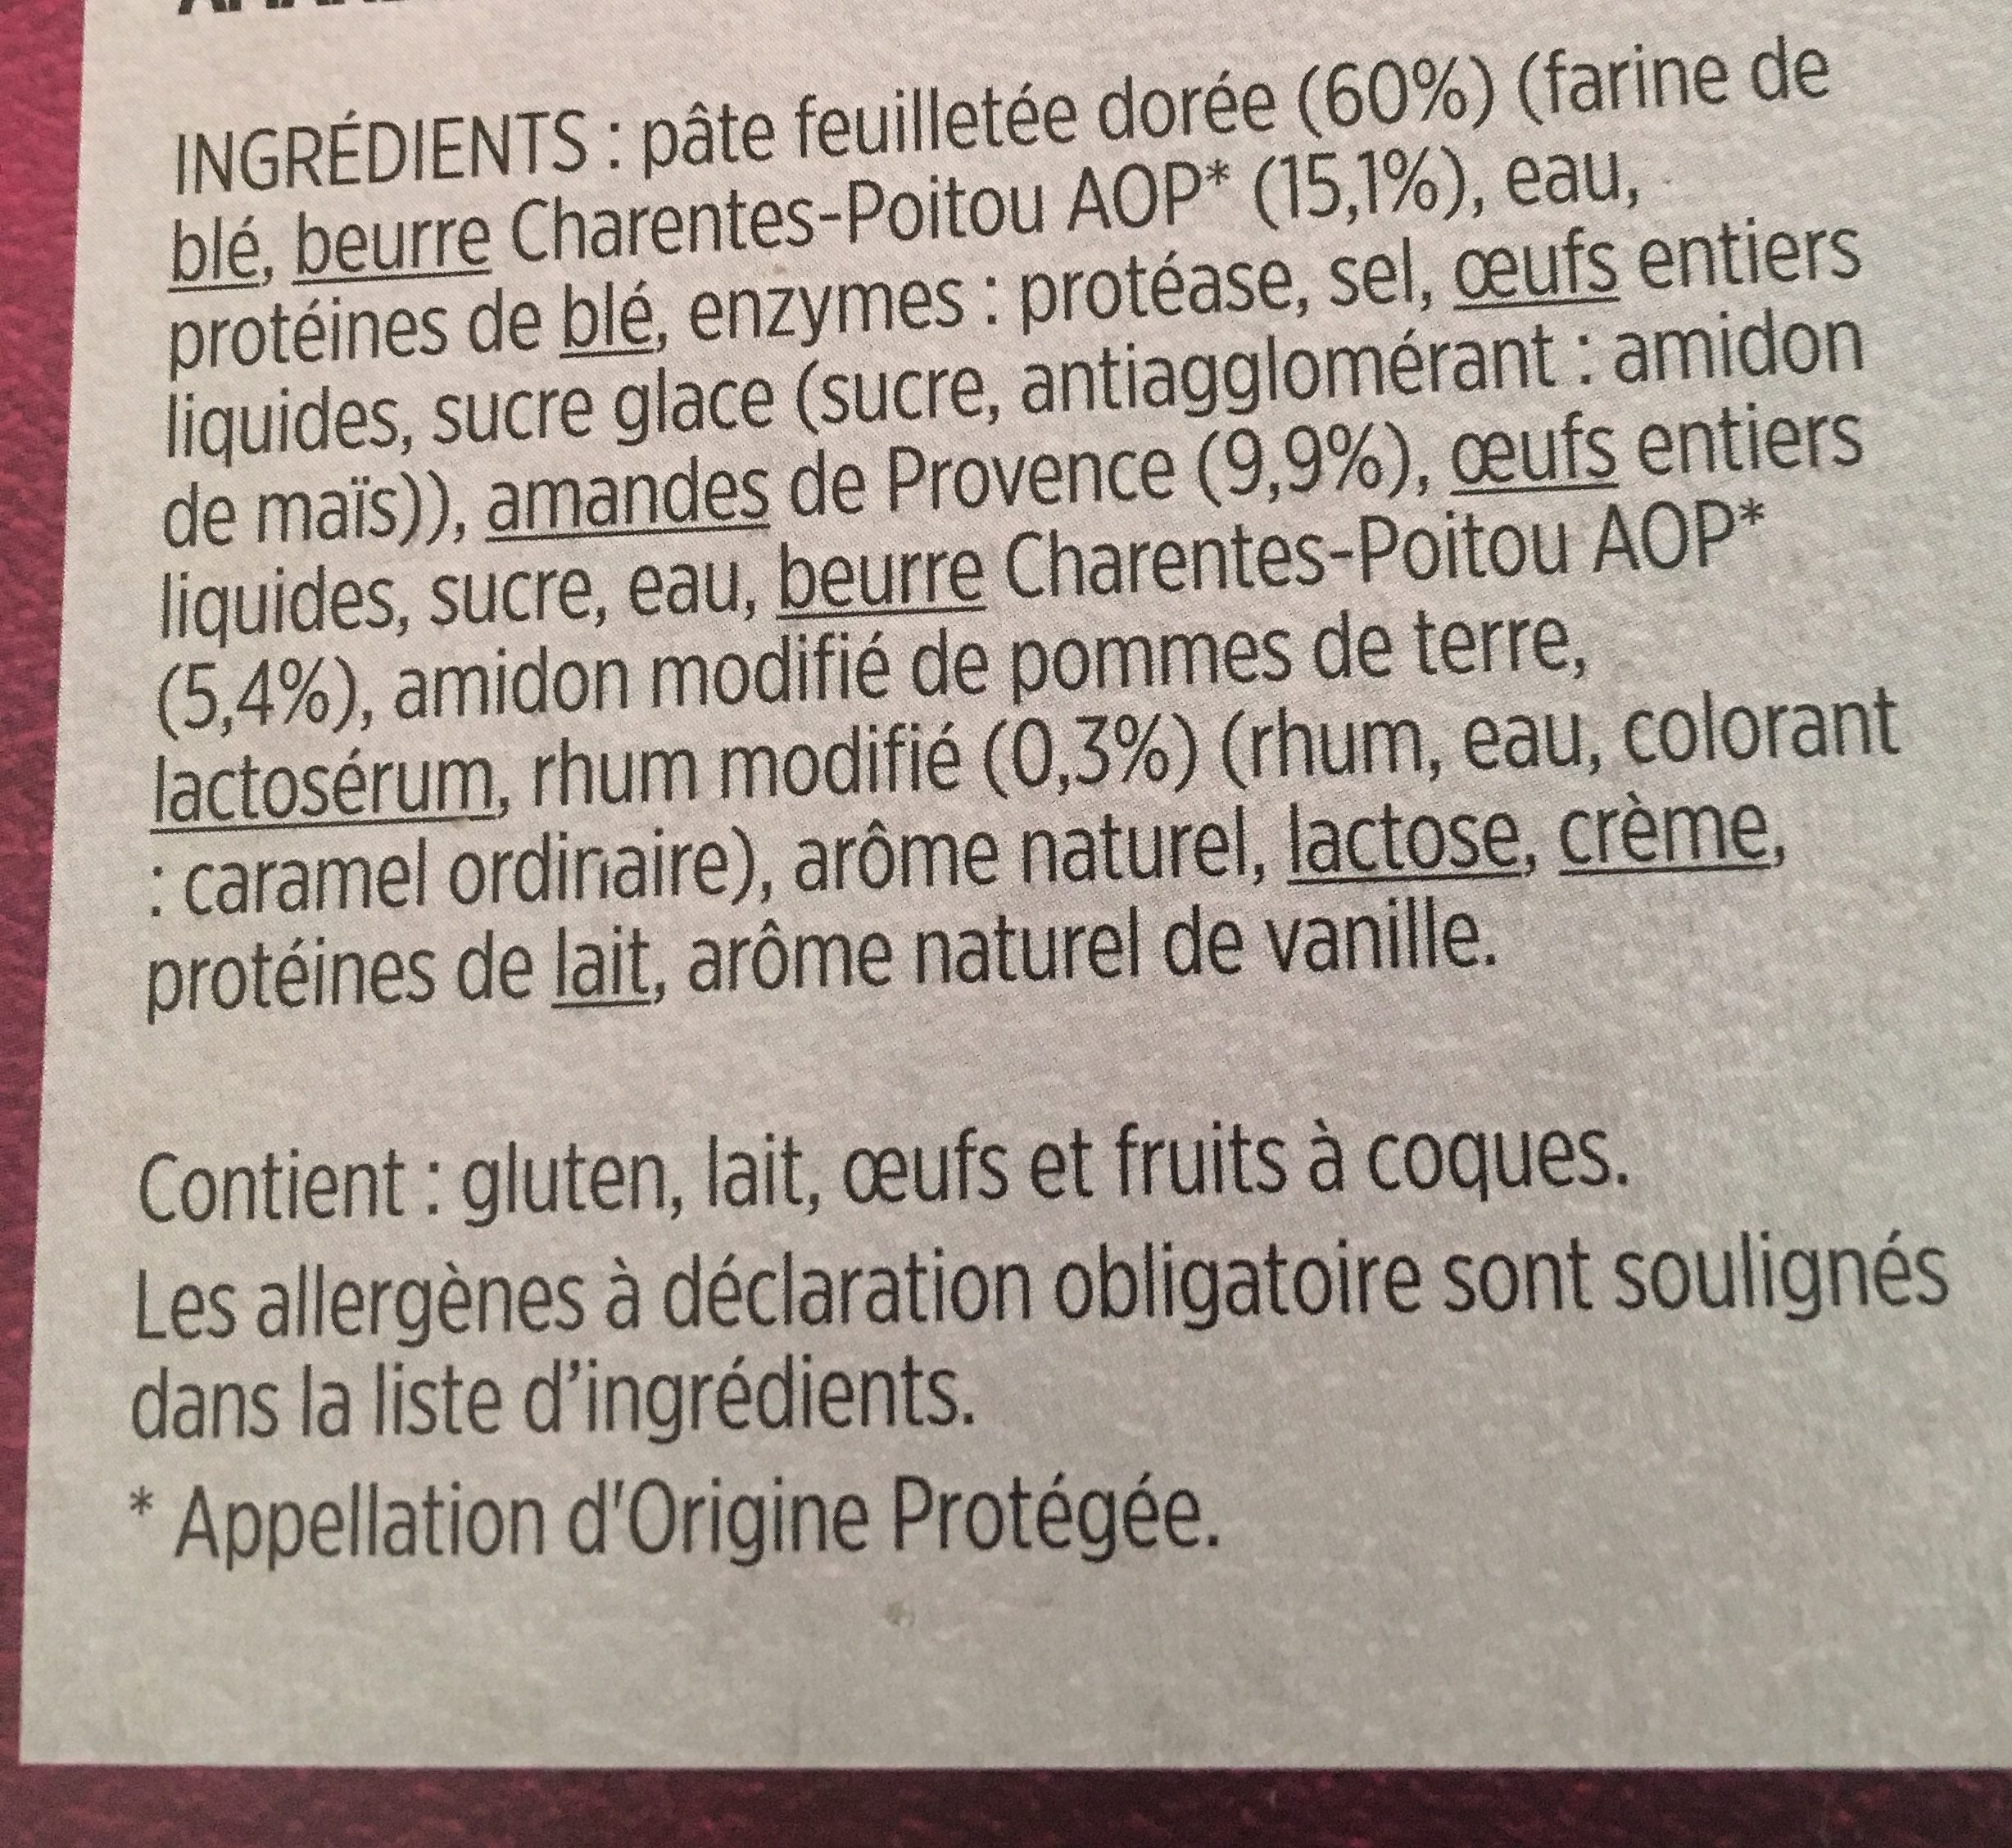 La galette du bon Roi Louis - Ingredients - fr